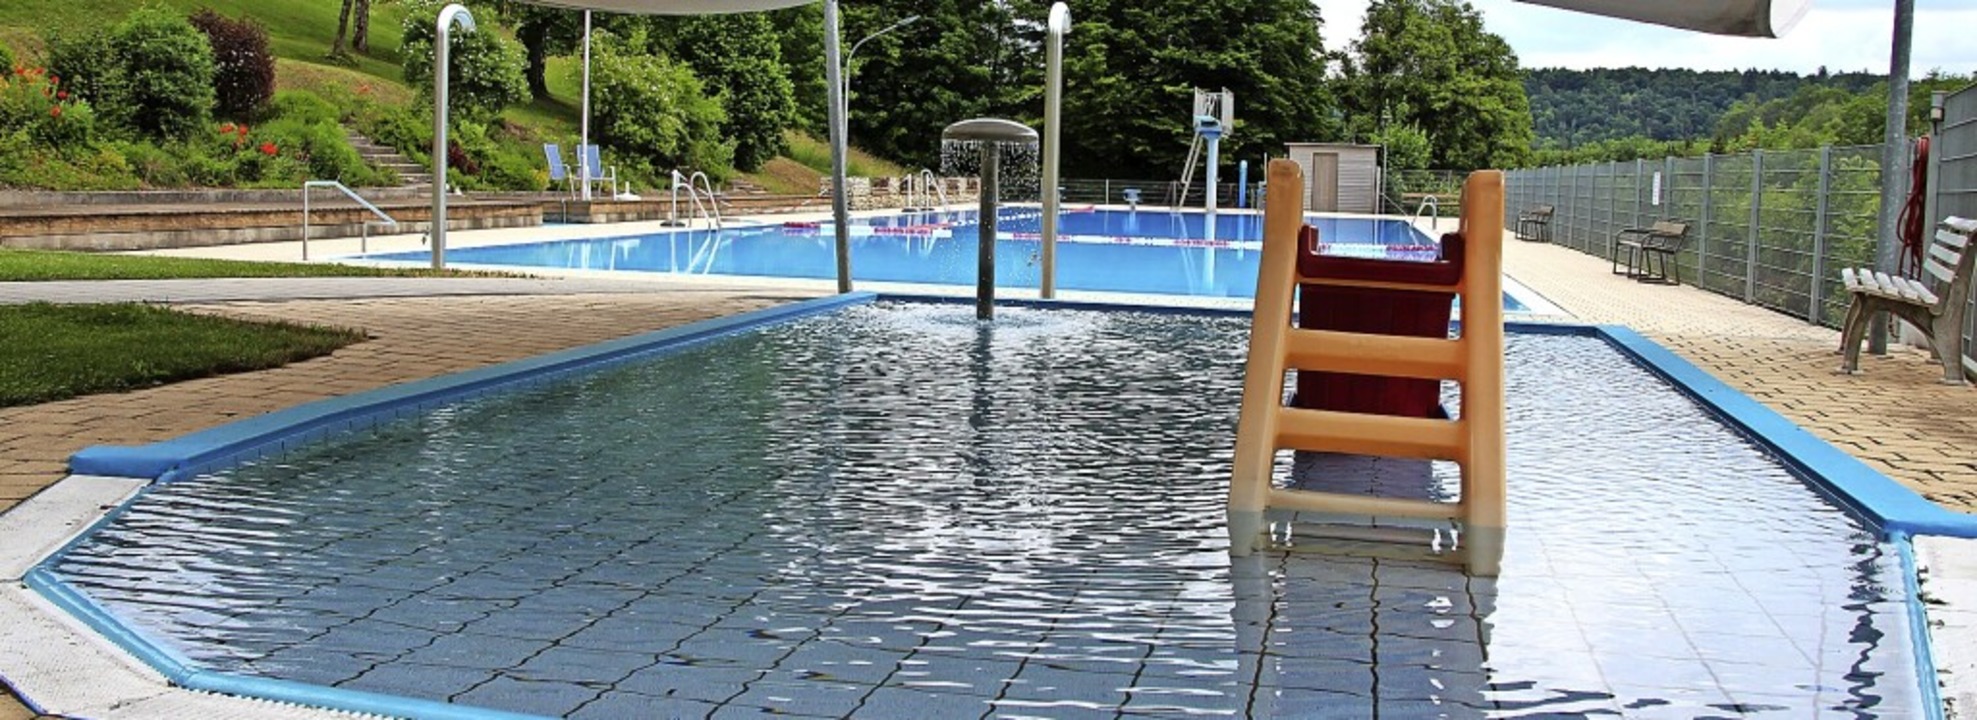 Es kann geschwommen und gebadet werden: Das Schwimmbad Stühlingen ist geöffnet.   | Foto:  